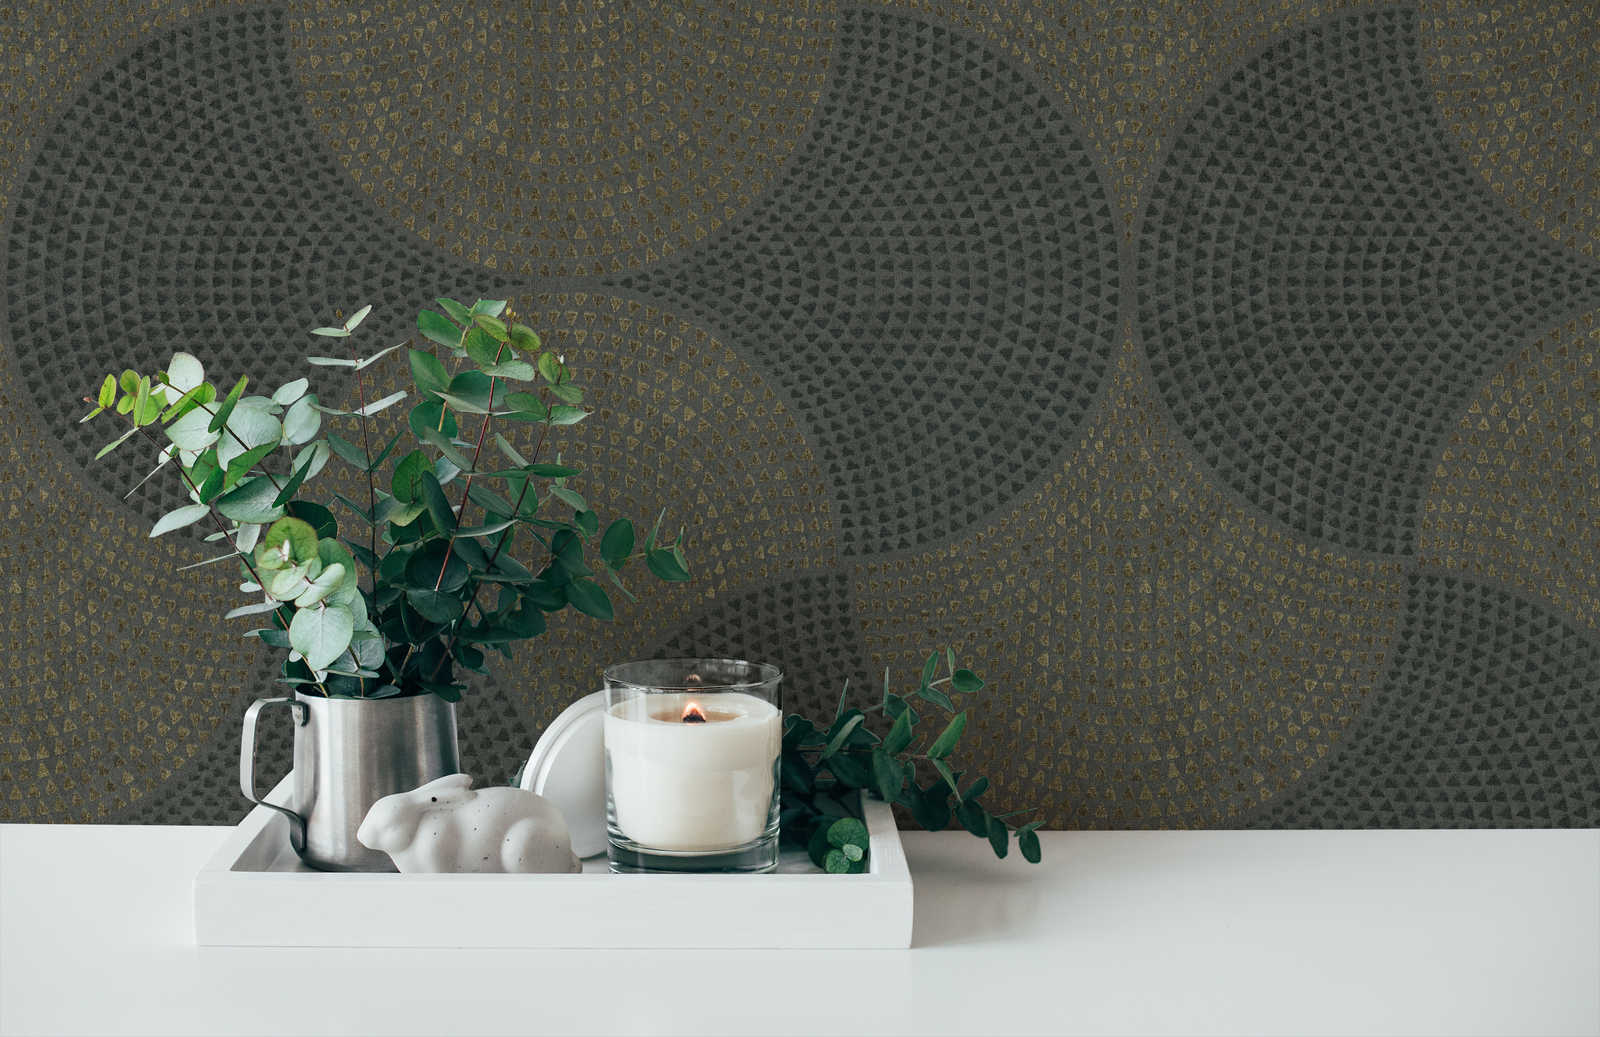             Tapete Mosaik-Muster mit Metallic Effekt & Used Look – Grau, Metallic
        